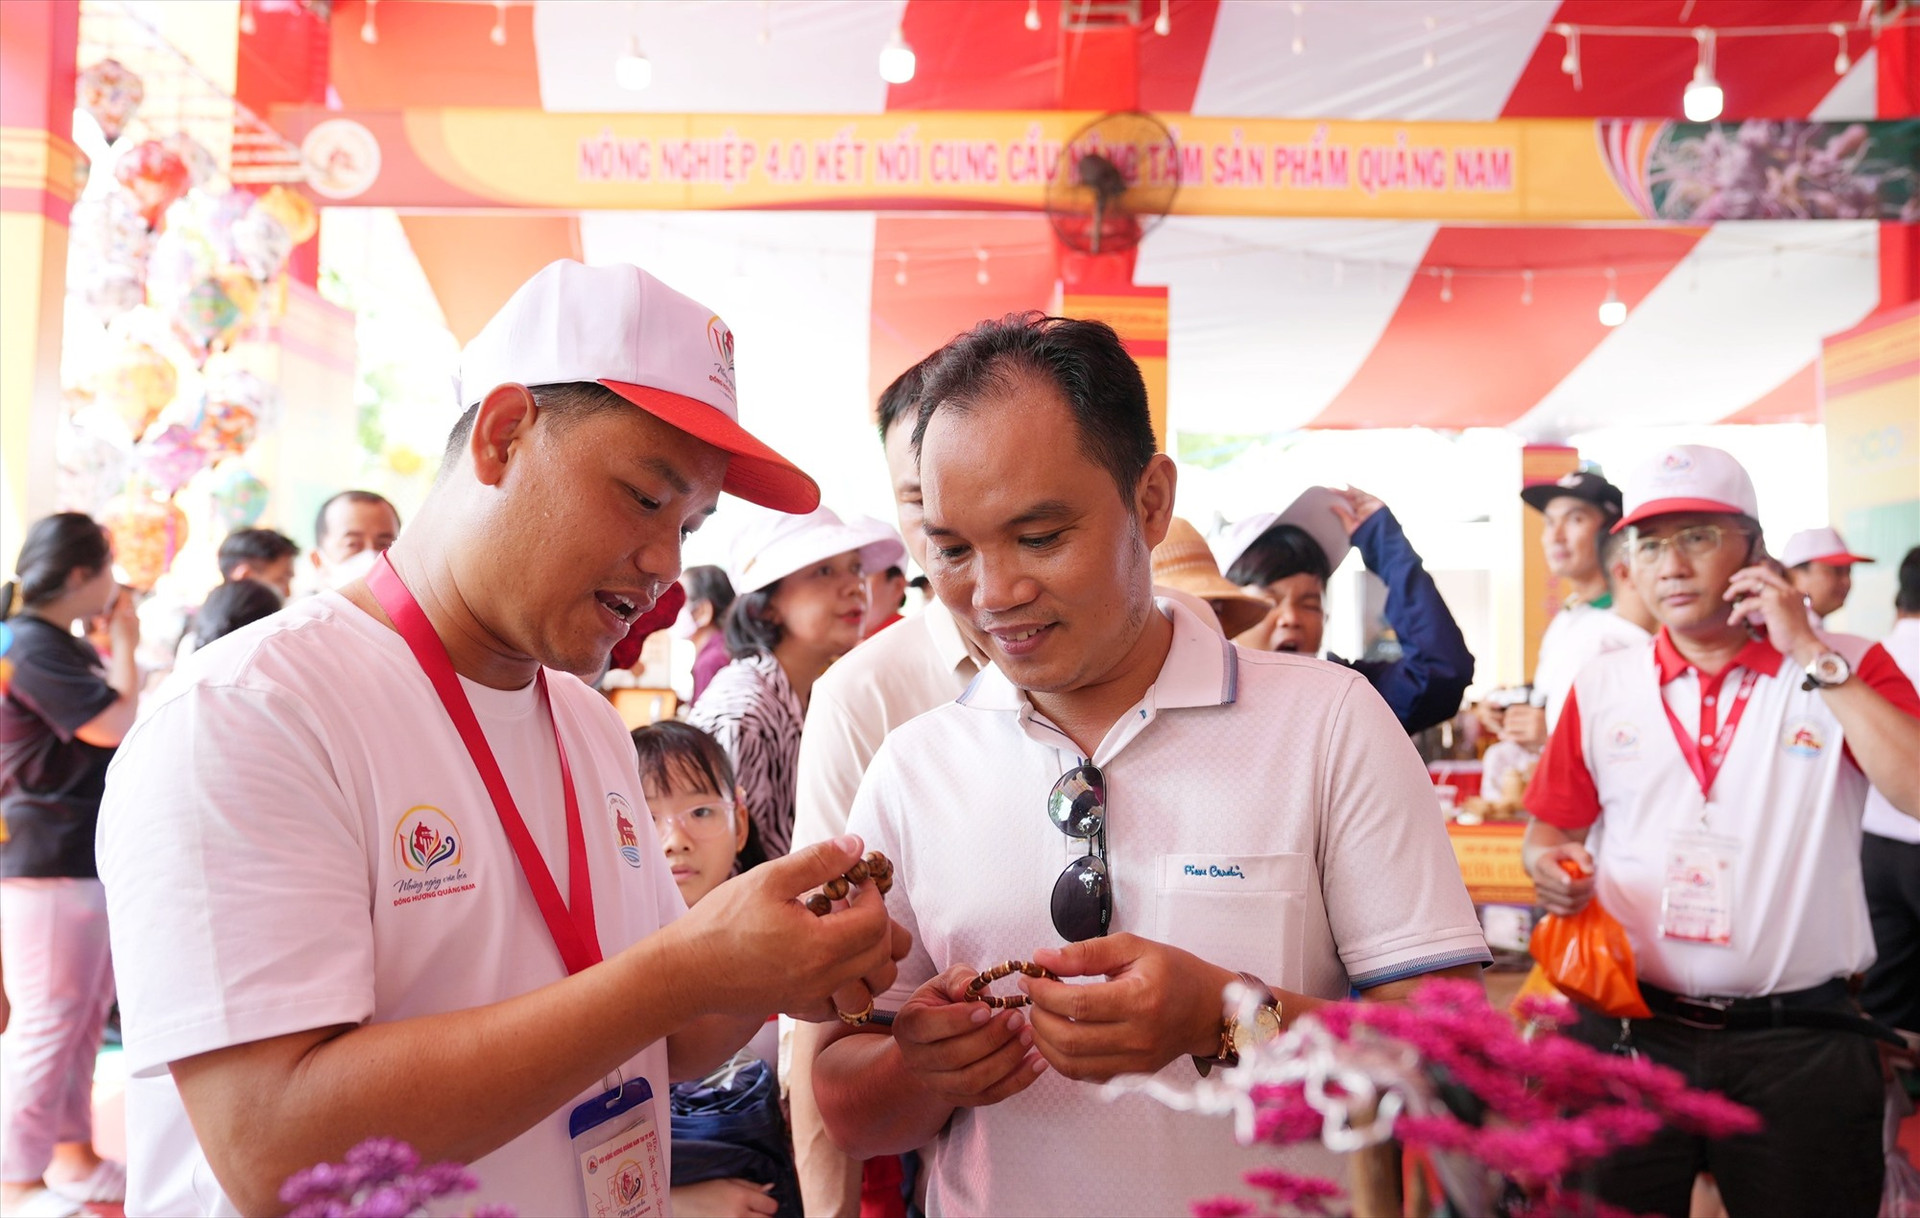 Ngày hội sản phẩm Quảng Nam tại TP.Hồ Chí Minh diễn ra hồi đầu tháng 6 thu hút khá đông người tiêu dùng đến tham quan và mua sắm. Ảnh: P.V